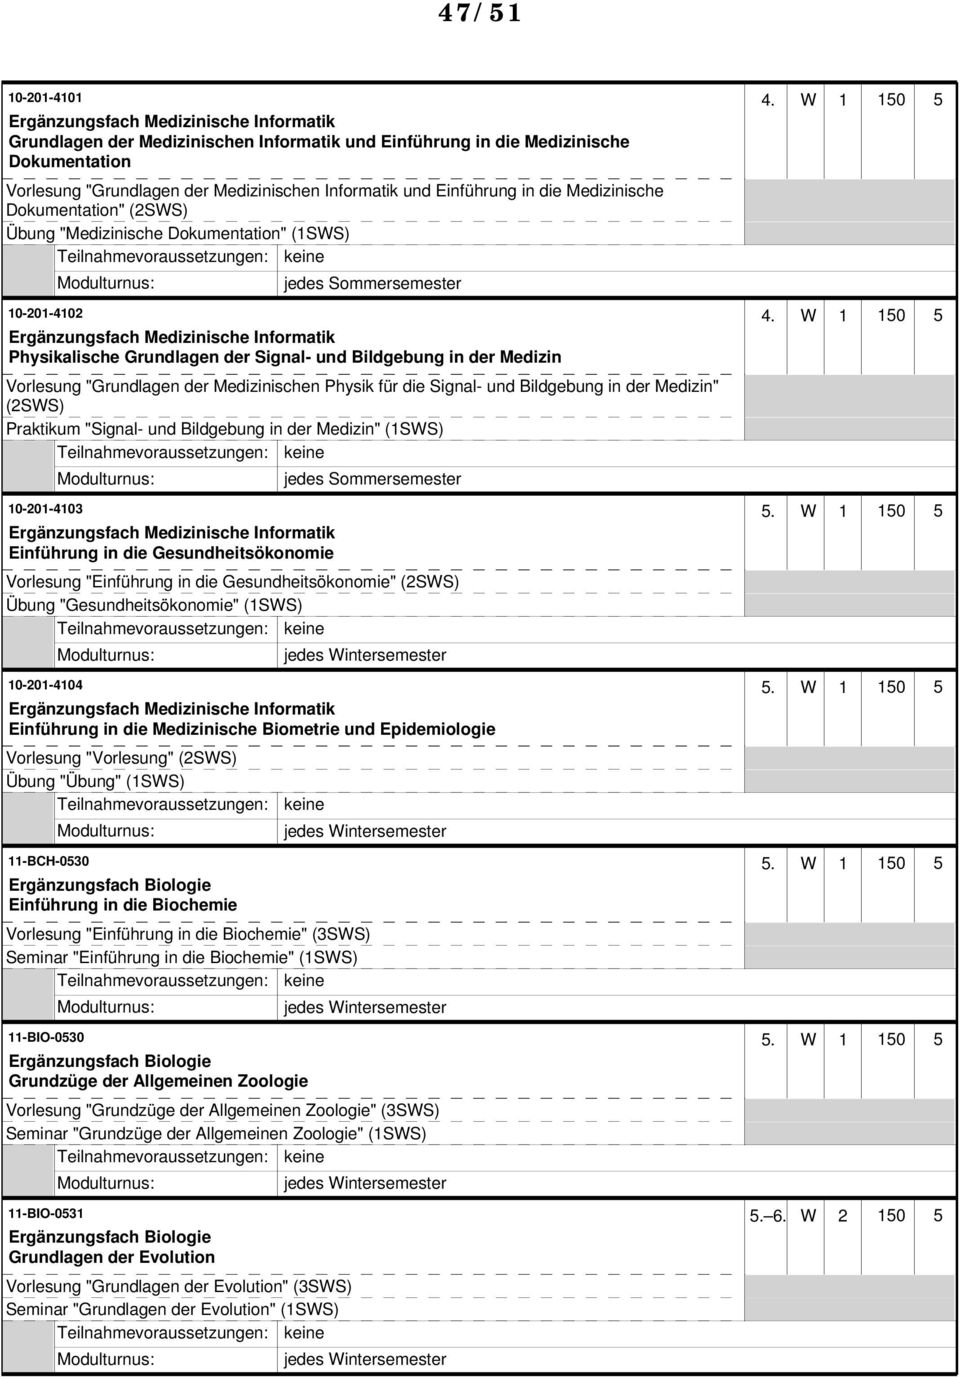 Einführung in die Medizinische Dokumentation" (2SWS) Übung "Medizinische Dokumentation" (1SWS) 10-201-4102 4.